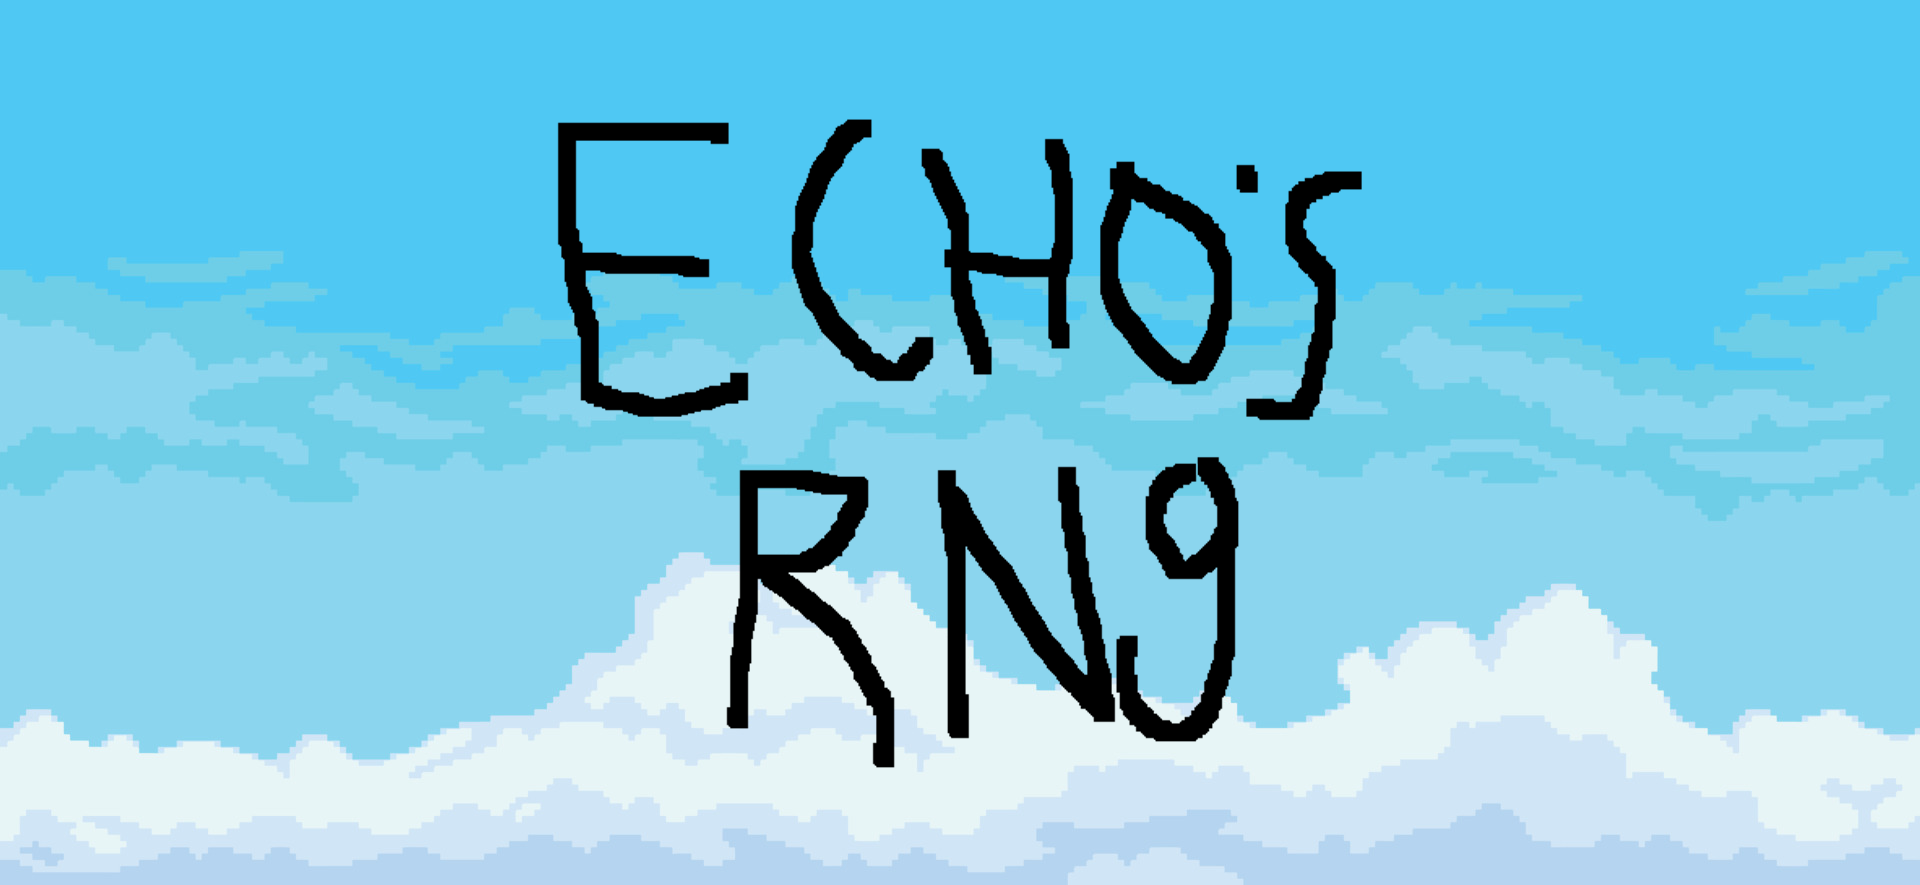 ECHOs RNG